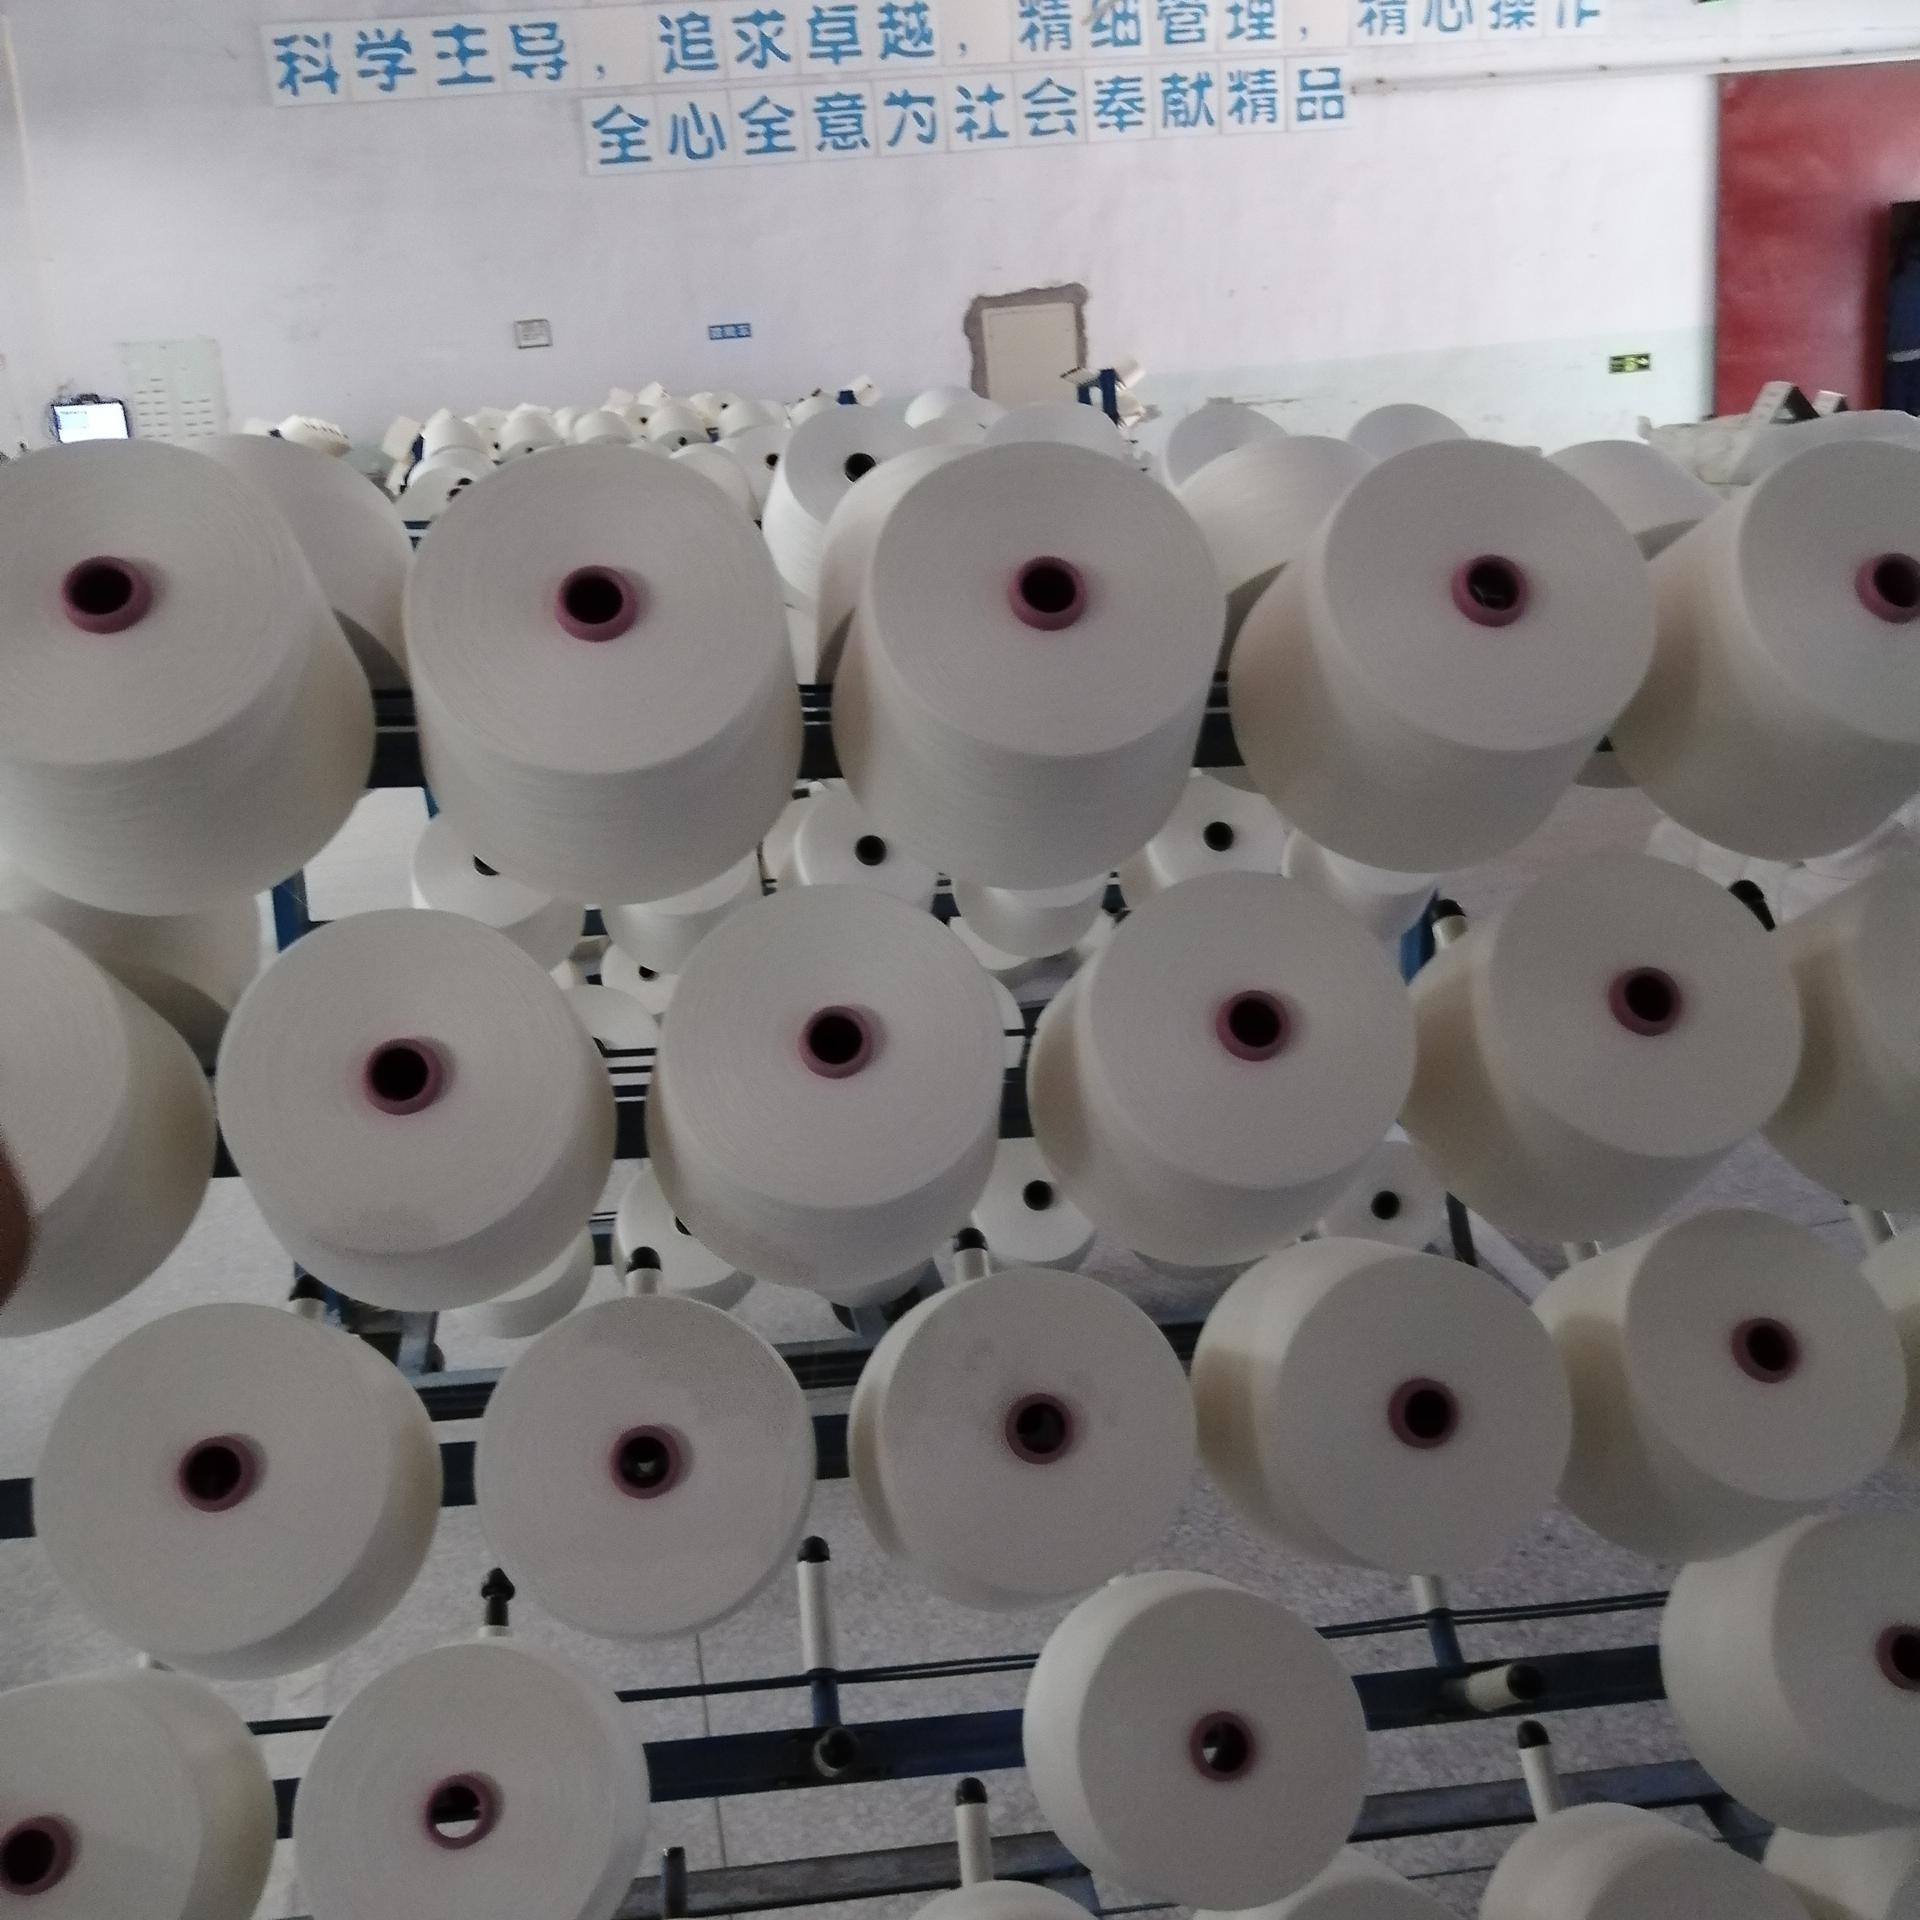 恒强纺织厂常年供应 竹纤维纱线 天竹 证书吊牌齐全 现货供应